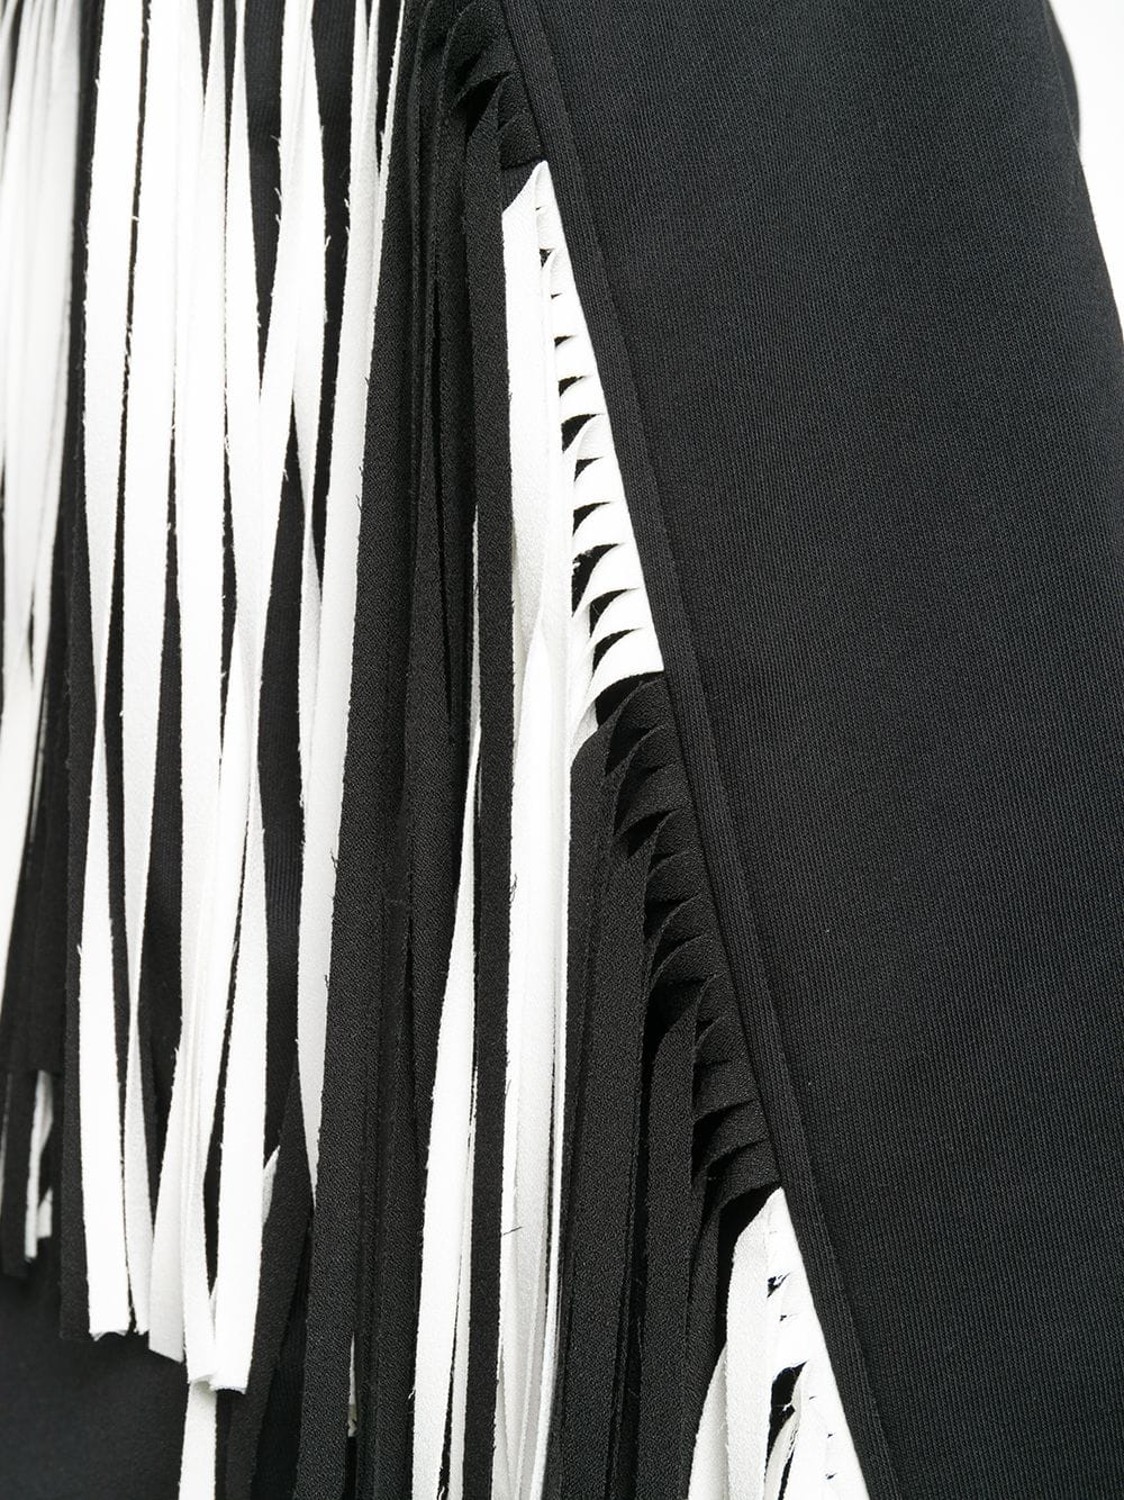 shop MSGM Saldi Felpe: Felpa MSGM, modello regolare, girocollo, manica lunga, colore nero, frange dietro bianche e nere.

Composizione: 100% cotone. number 1412